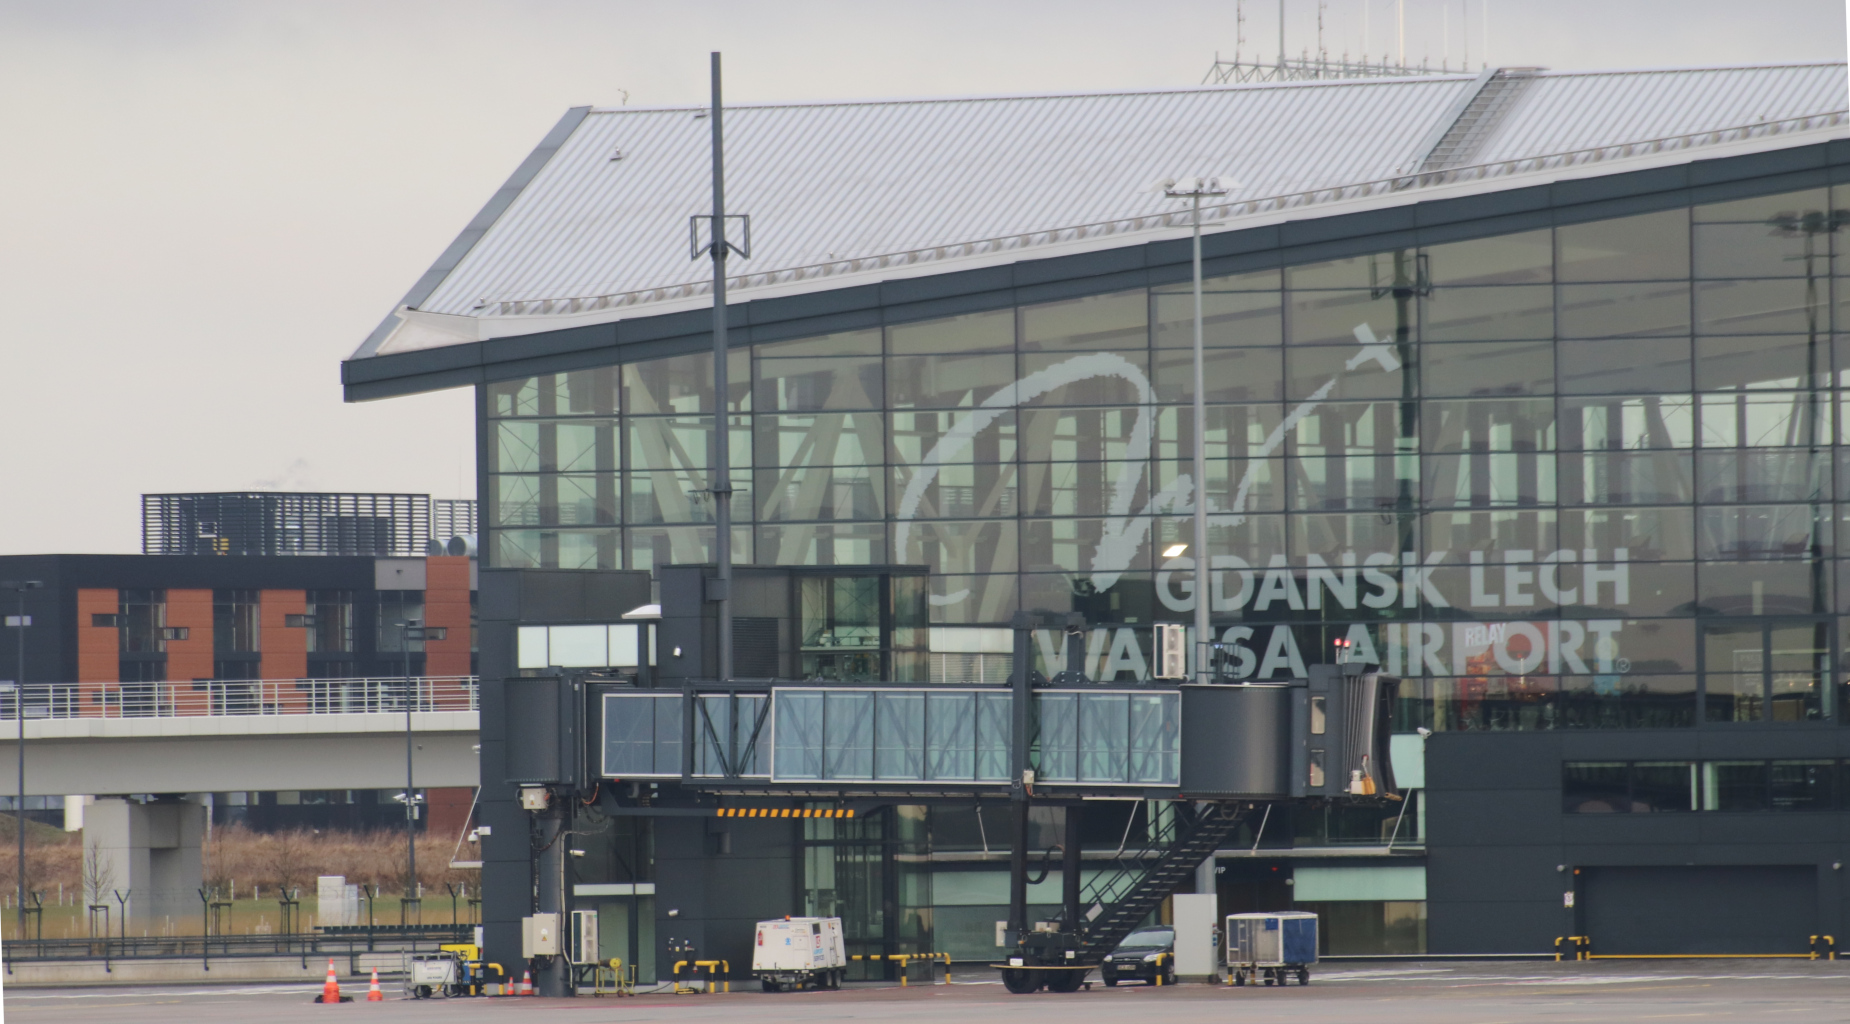 Prawie 2,5 mln pasażerów w pół roku. Na gdańskim lotnisku rośnie liczba pasażerów oraz przeładunki towarów